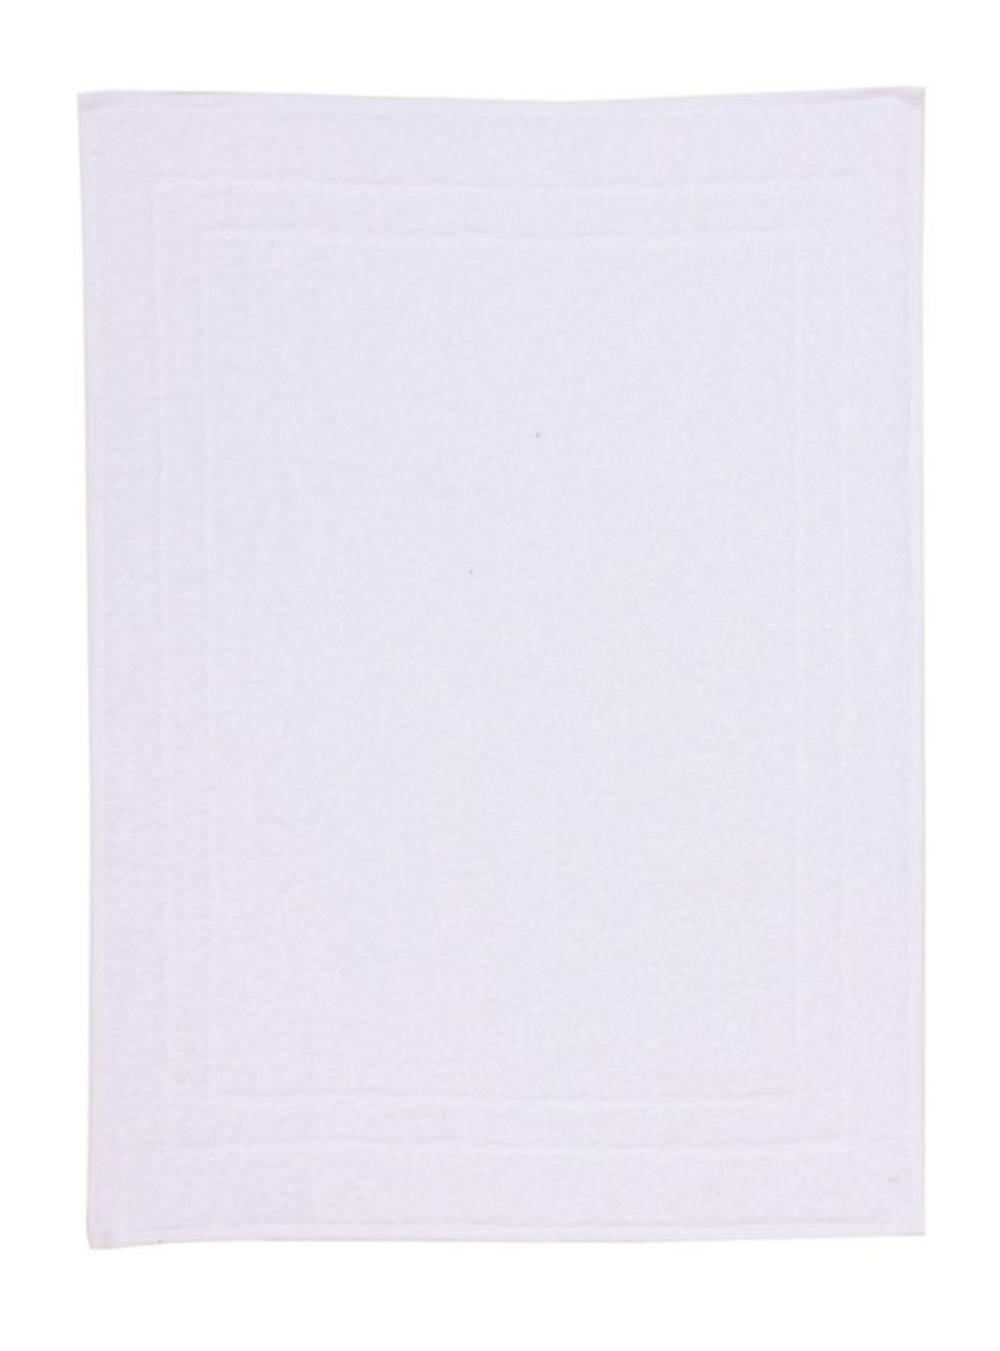 Lourdes toalla piso blanco (50 x 65 cm)